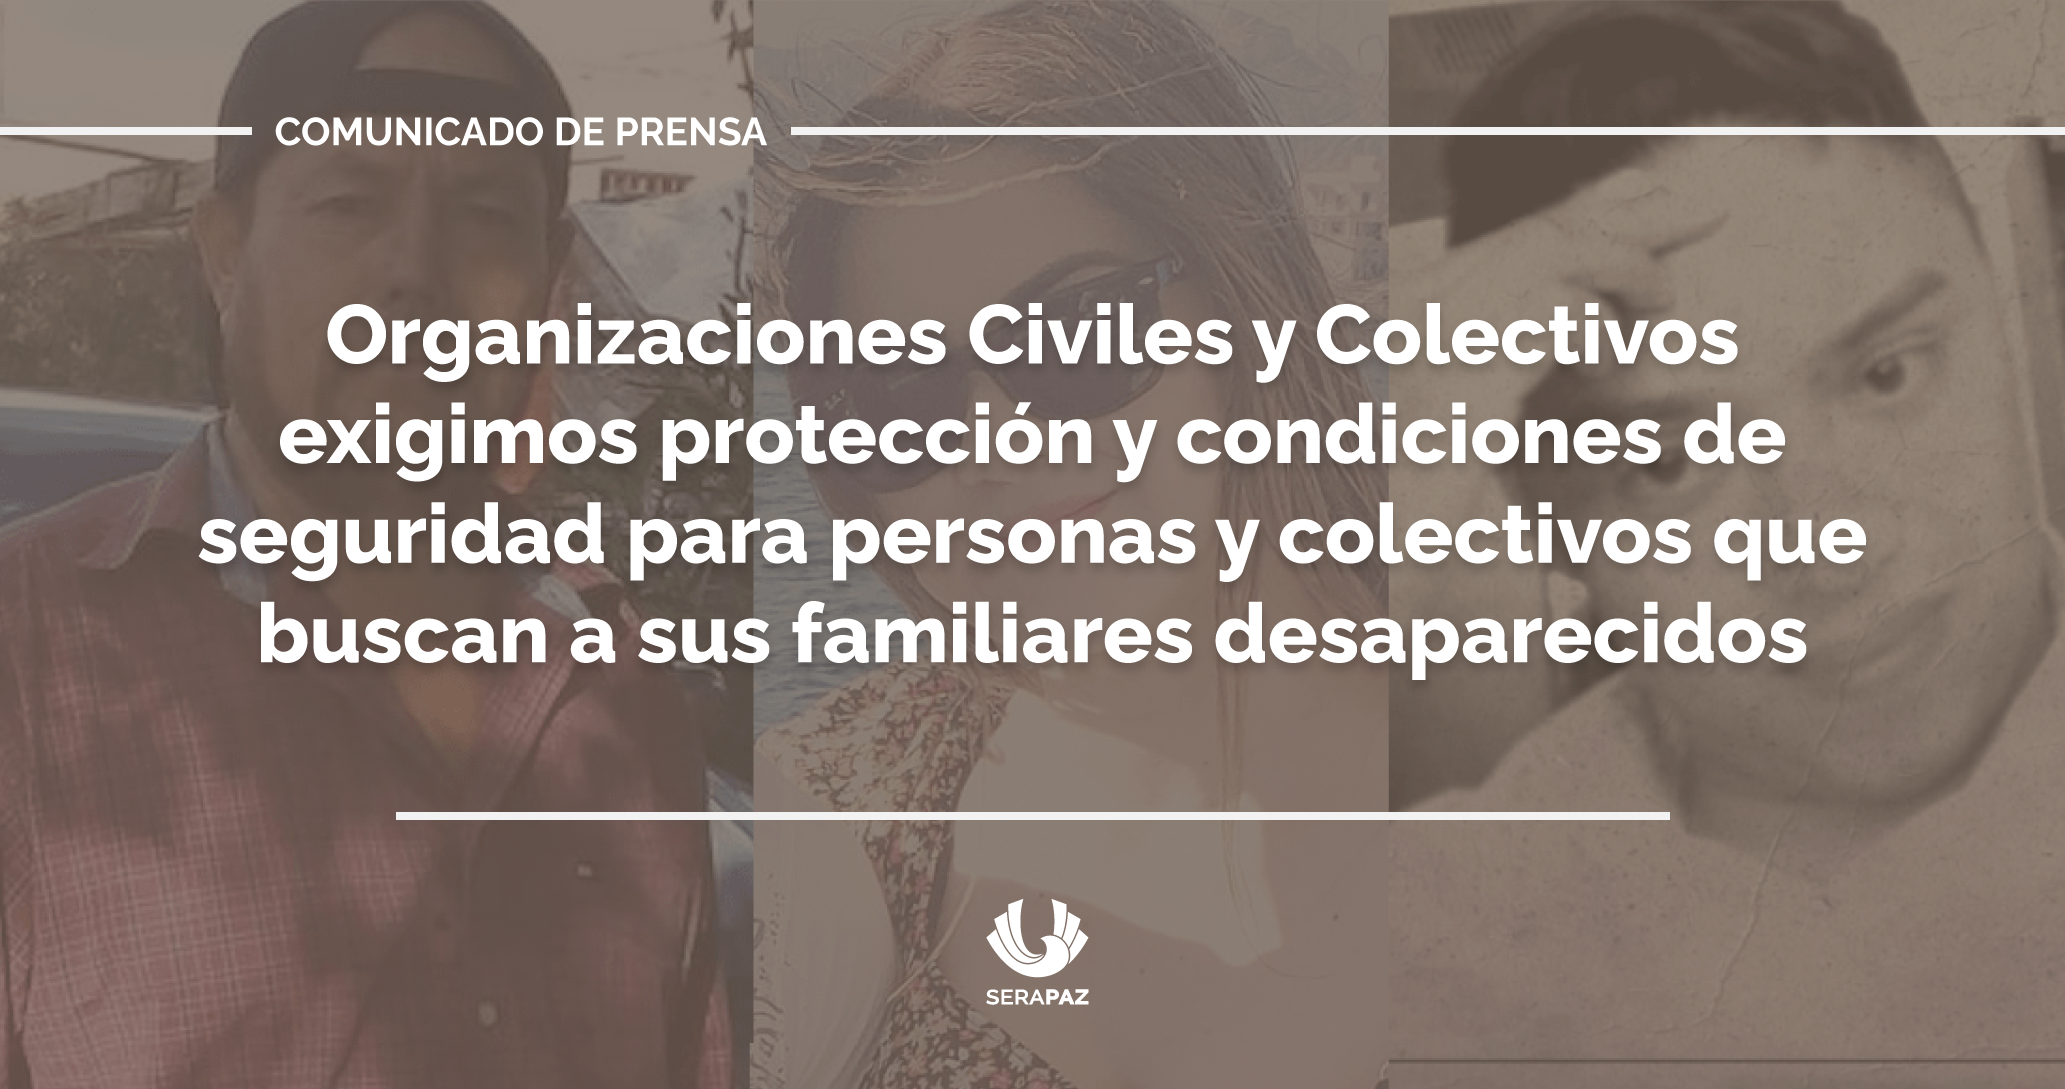 Organizaciones Civiles y Colectivos exigimos protección y condiciones de seguridad para personas y colectivos que buscan a sus familiares desaparecidos